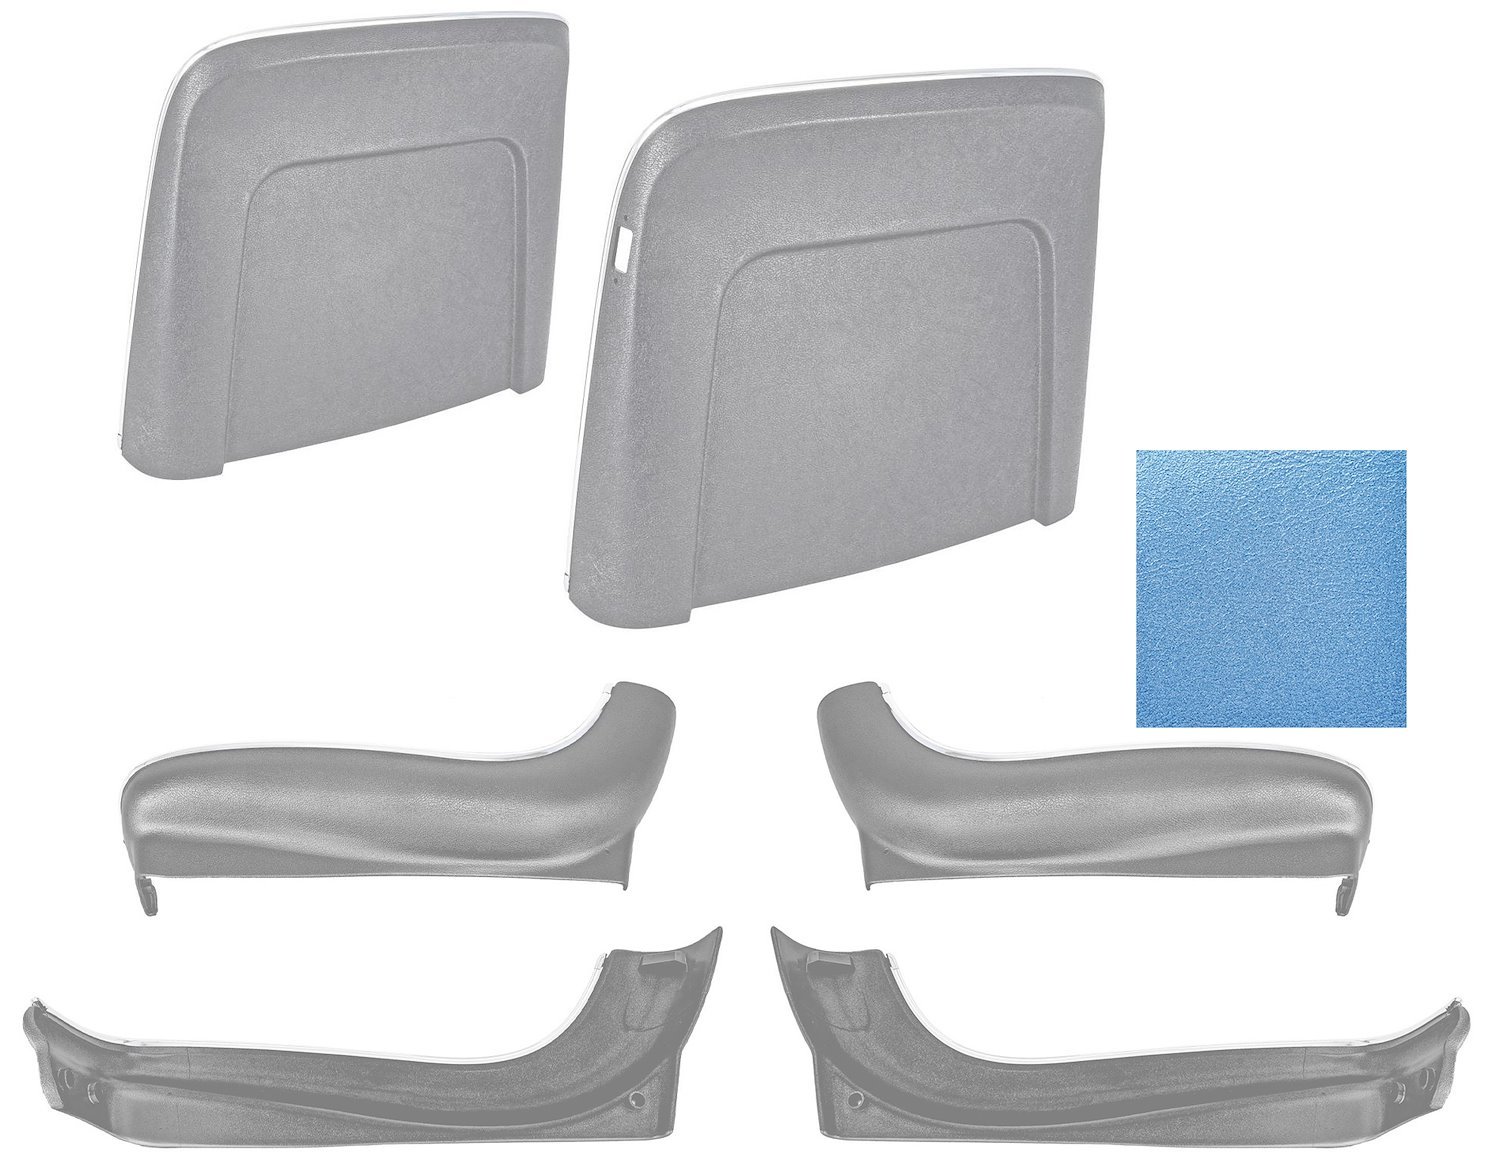 Seat Backs & Sides Kit Fits Select 1968 GM Models [Light Blue]